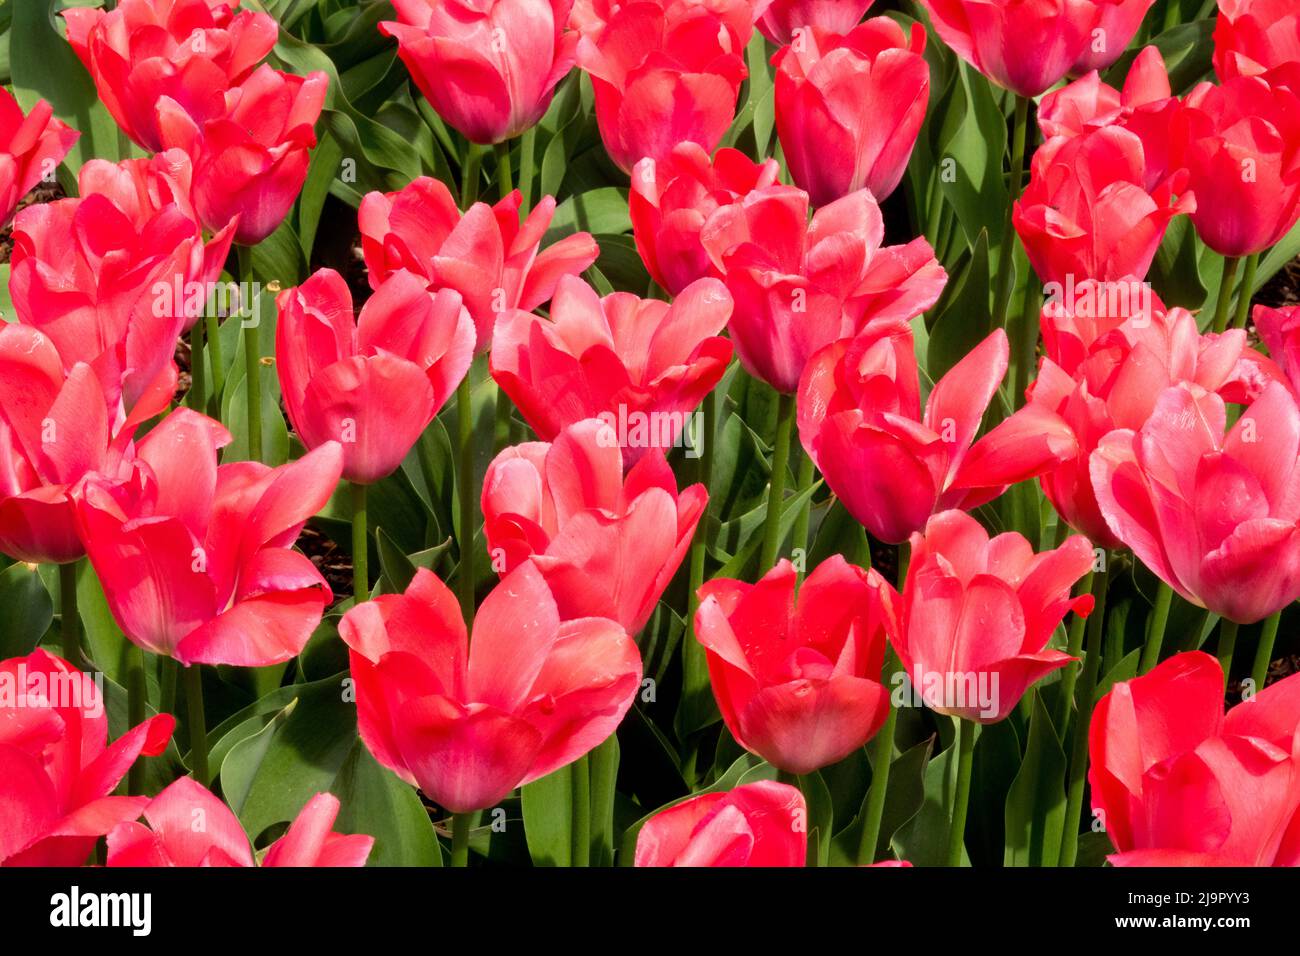 Pink, Tulips, Tulipa 'Van Eijk', Garden, Flowers, Bed, Spring, Tulip, Darwin hybrid Stock Photo